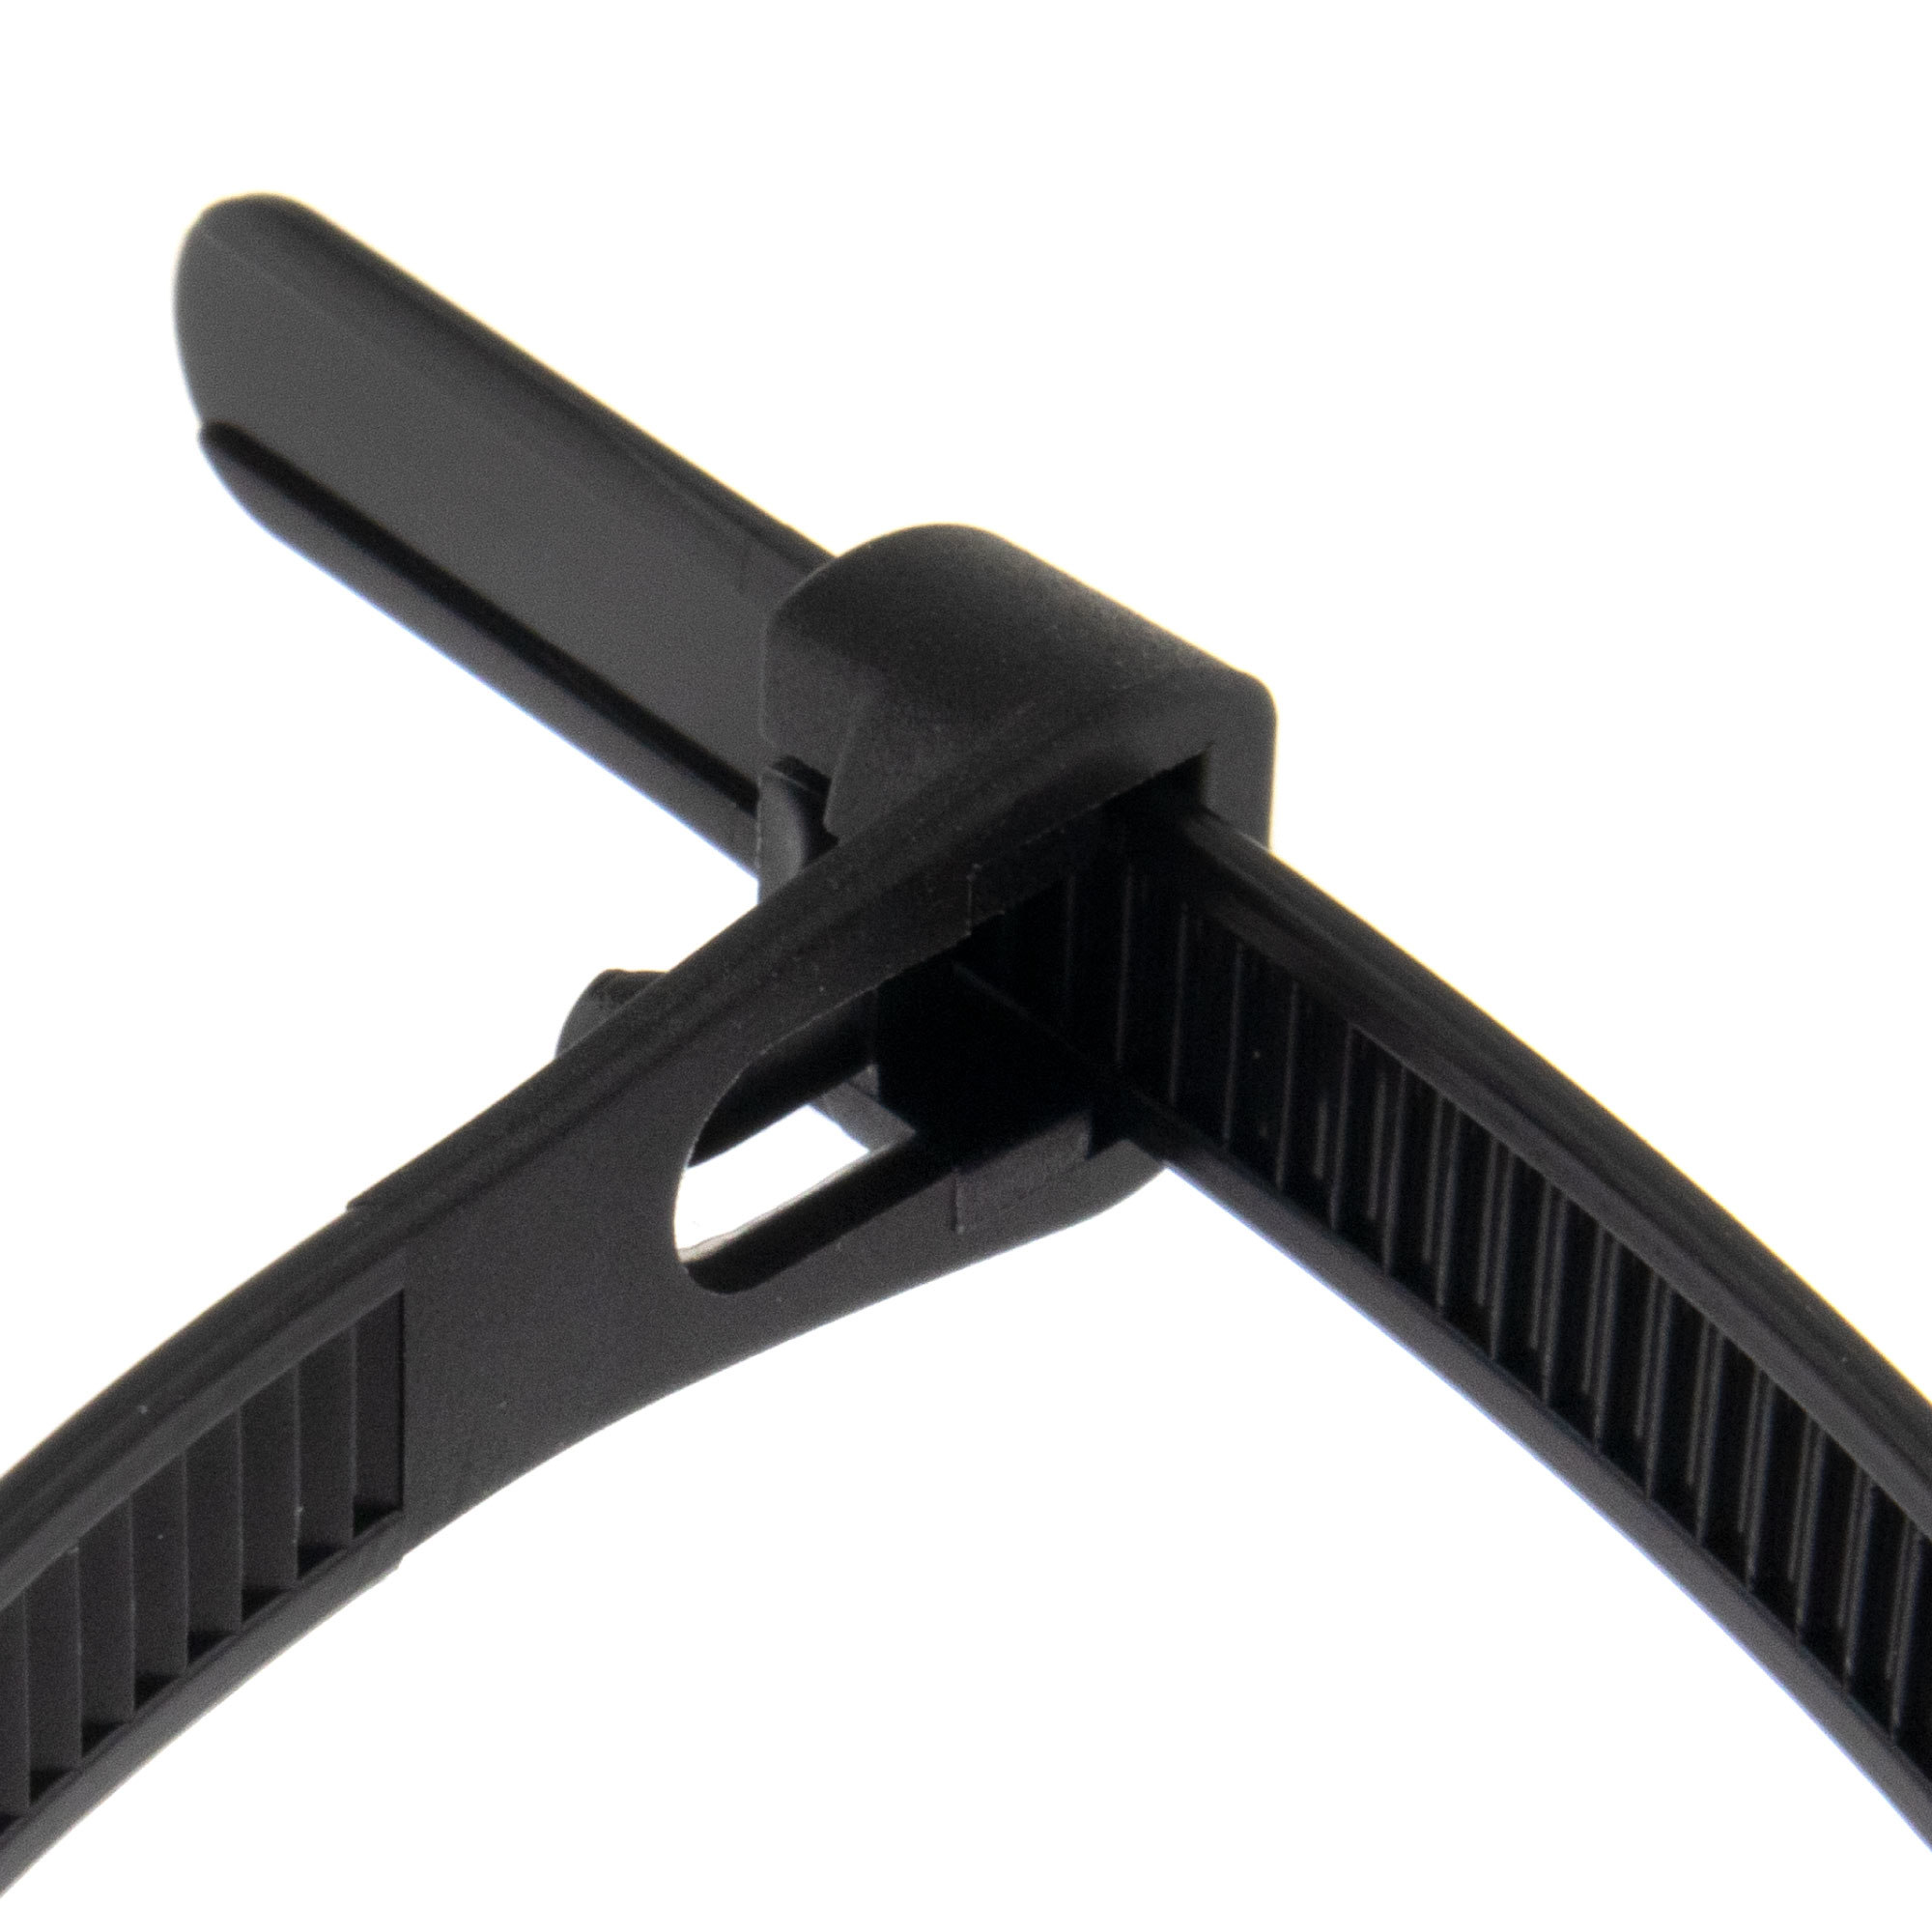 Cable tie releasable 150 x 7,6mm, black, 100PCS